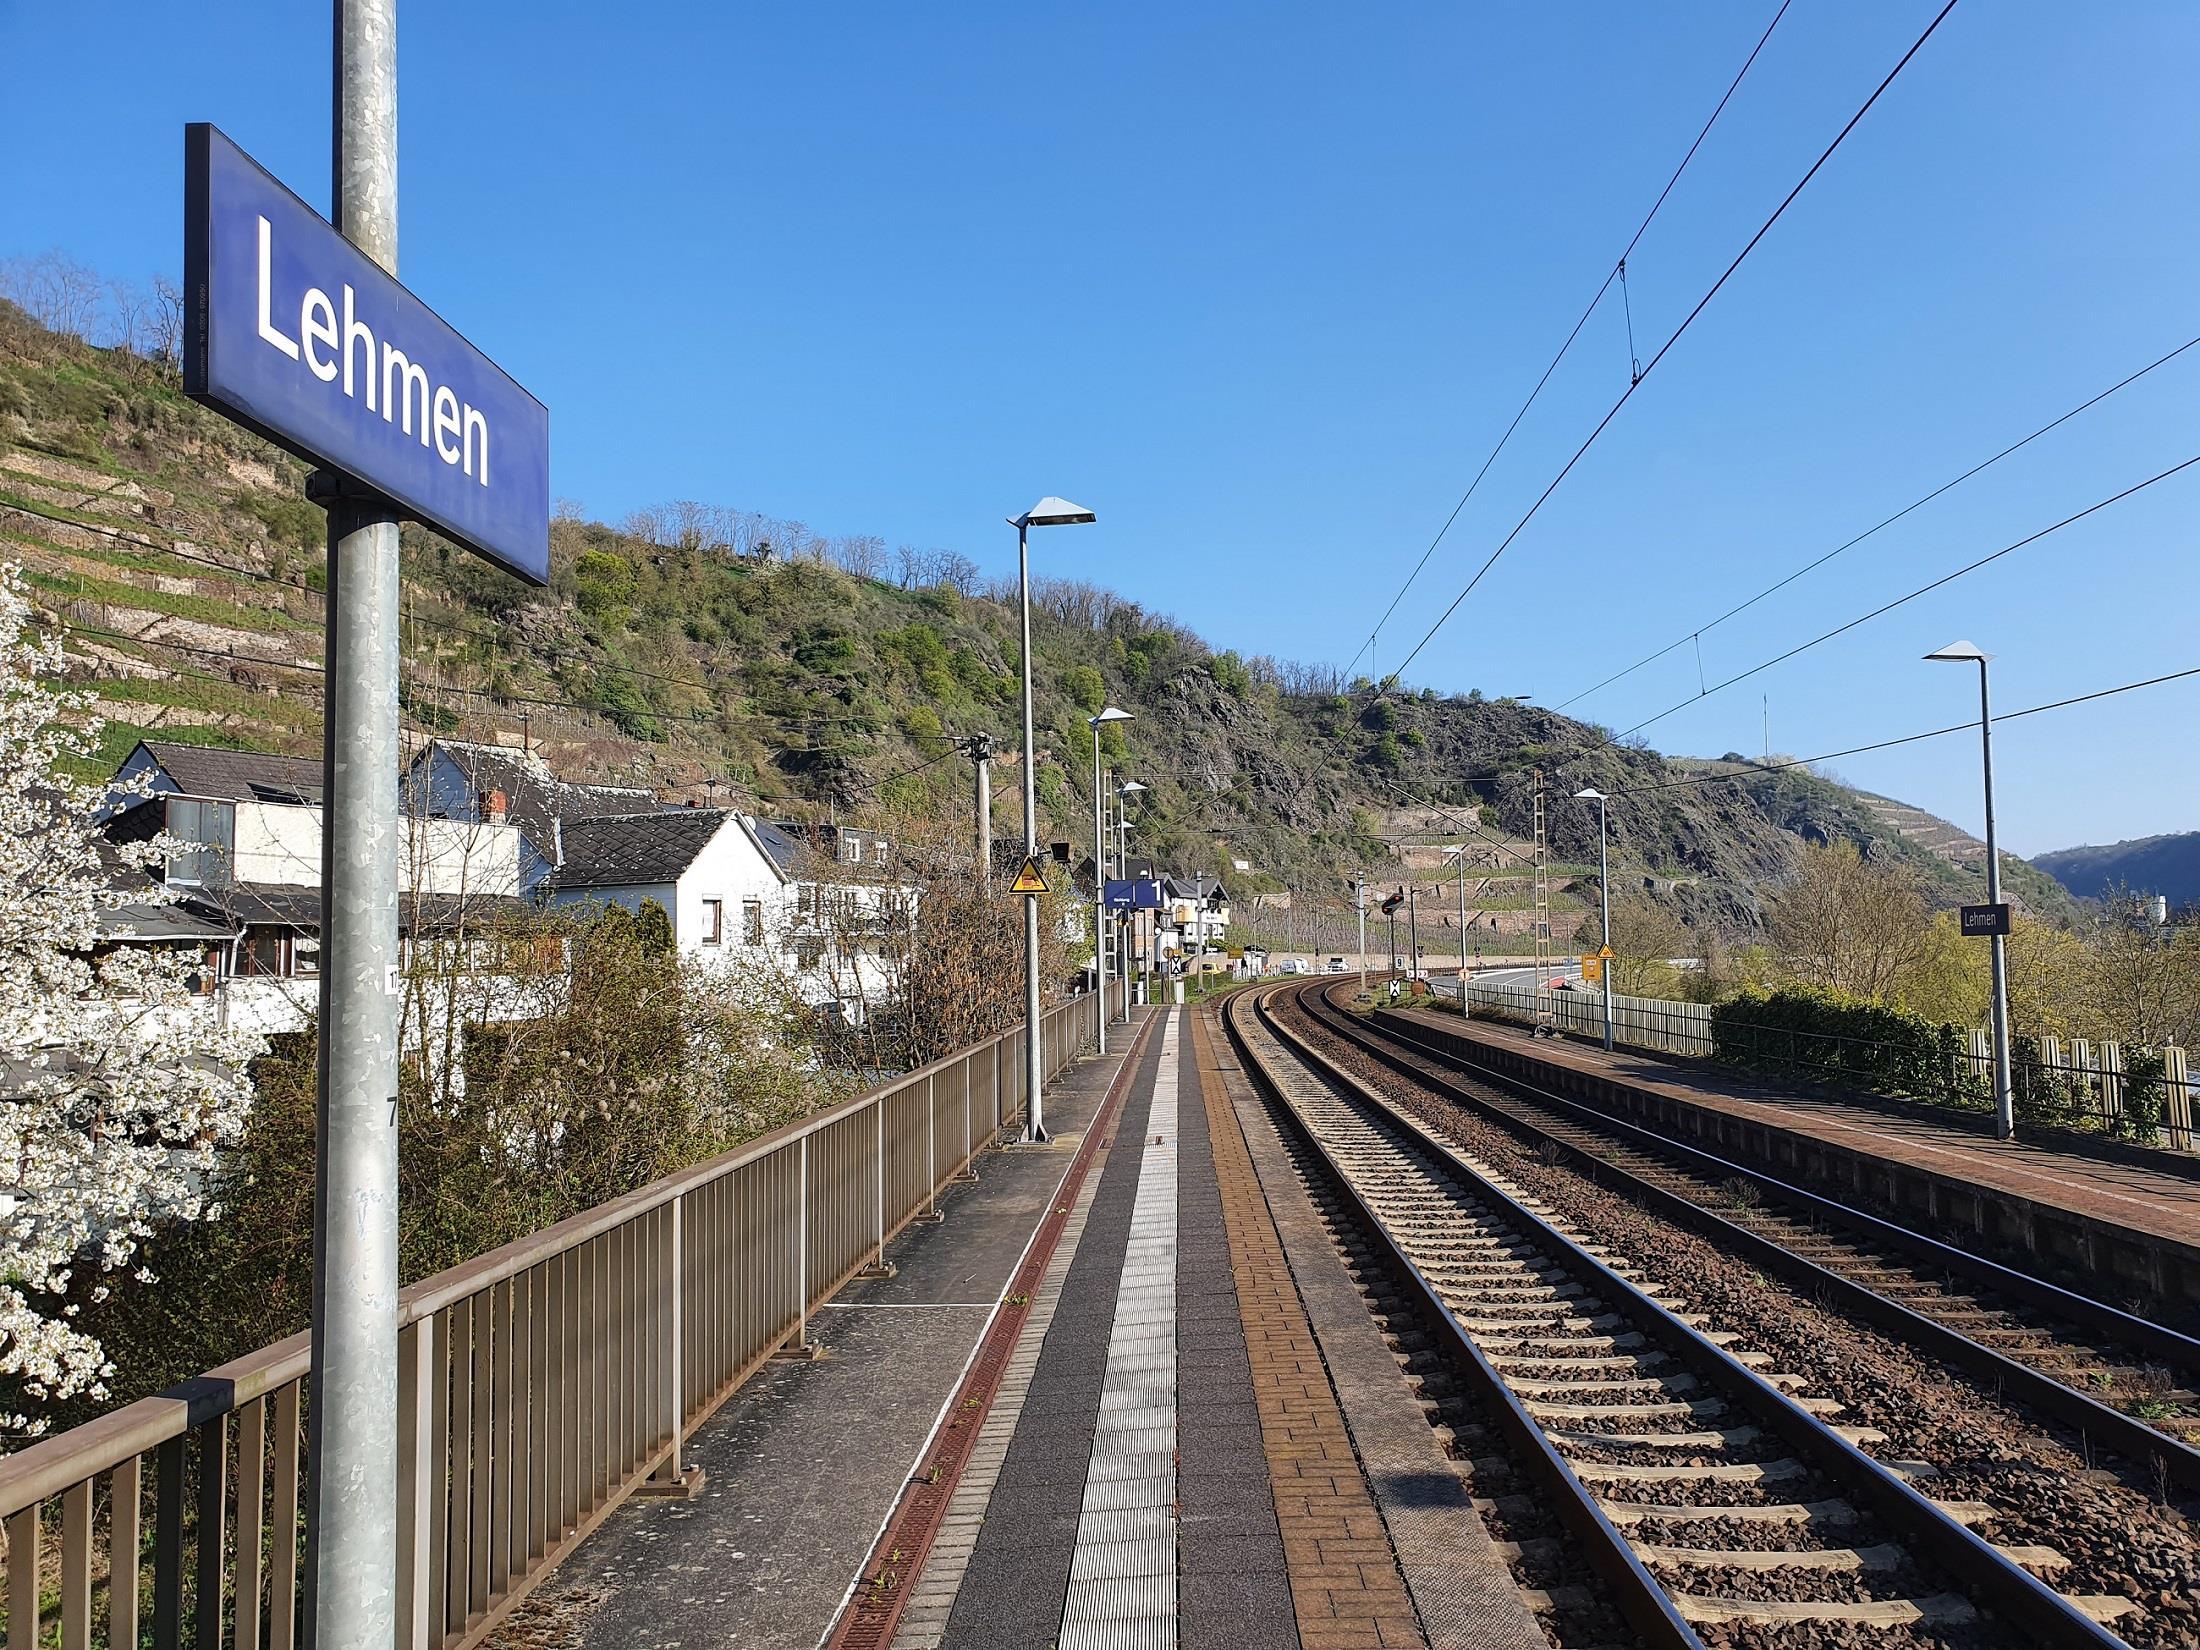 Bahnhof Lehmen für Fahrten nach Koblenz & Trier